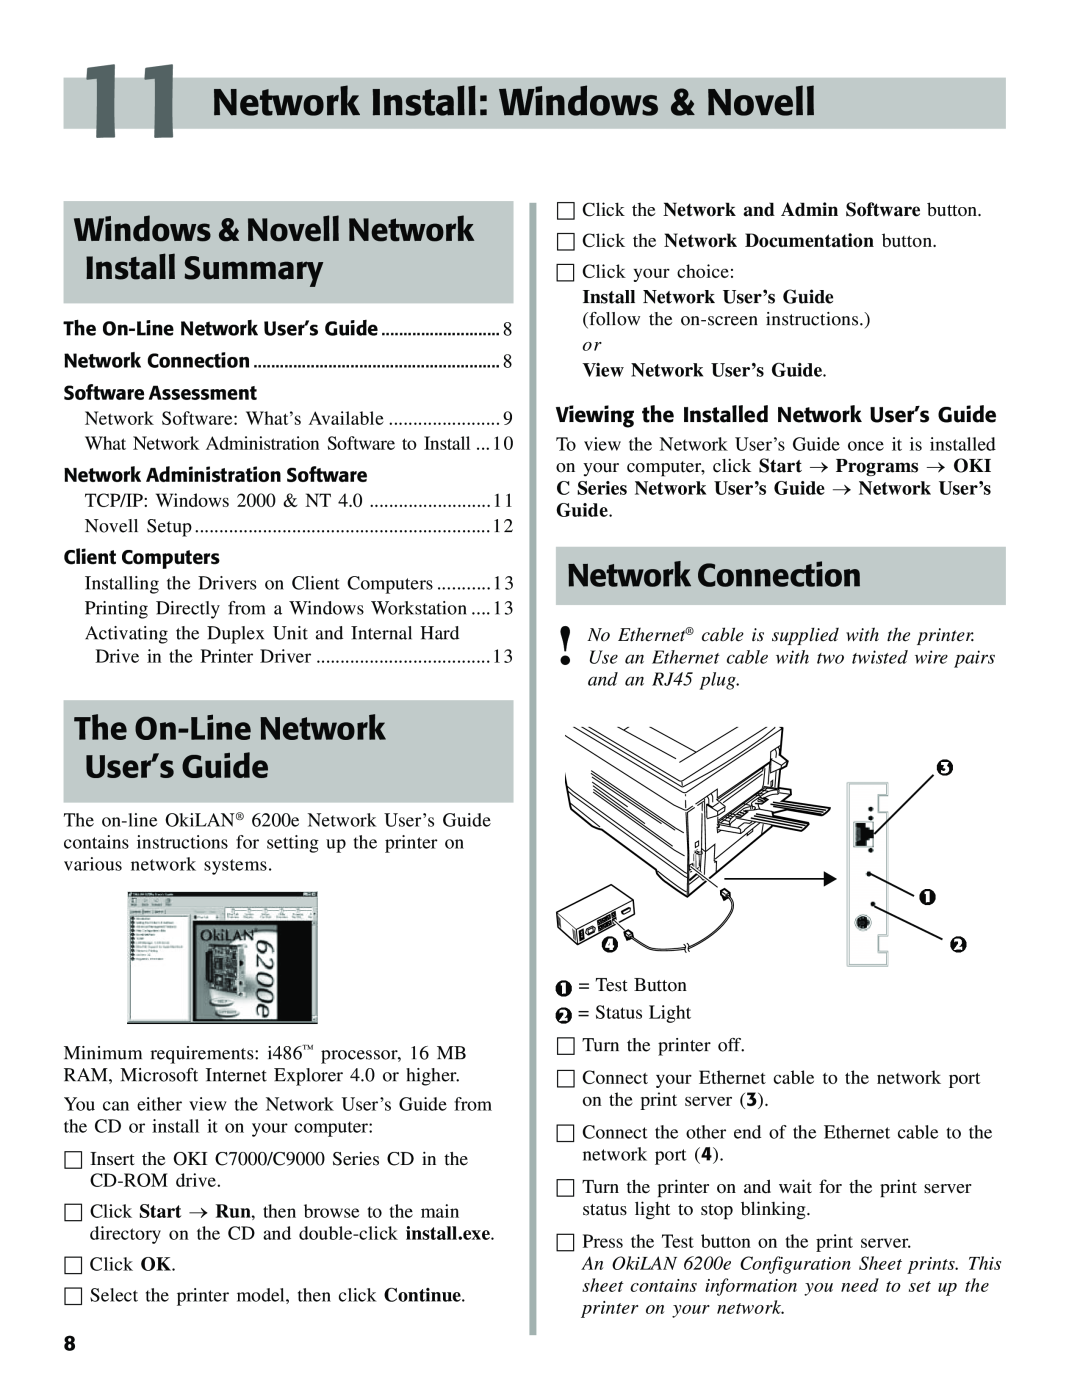 Oki C7000 Network Install Windows & Novell, Windows & Novell Network, Install Summary, The On-Line Network User’s Guide 